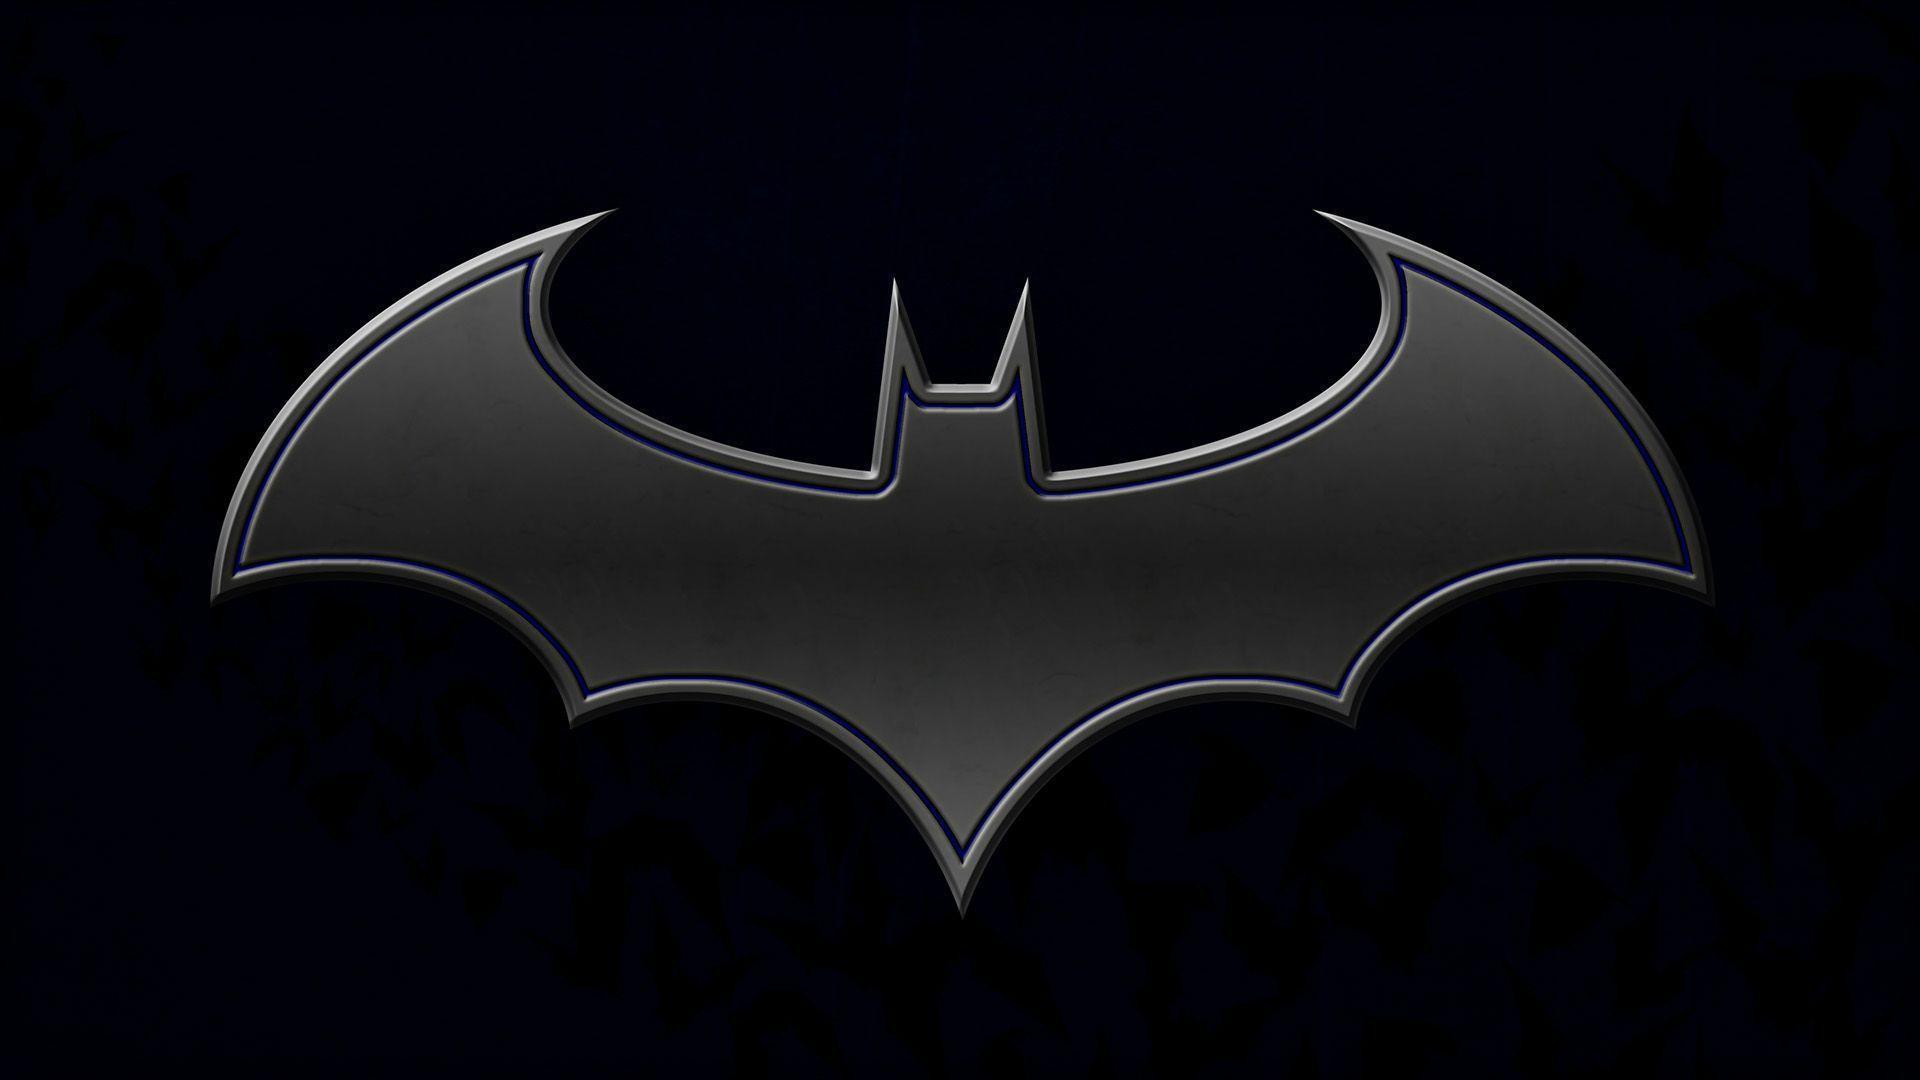 Logos For > Batman Symbol Wallpaper For iPhone